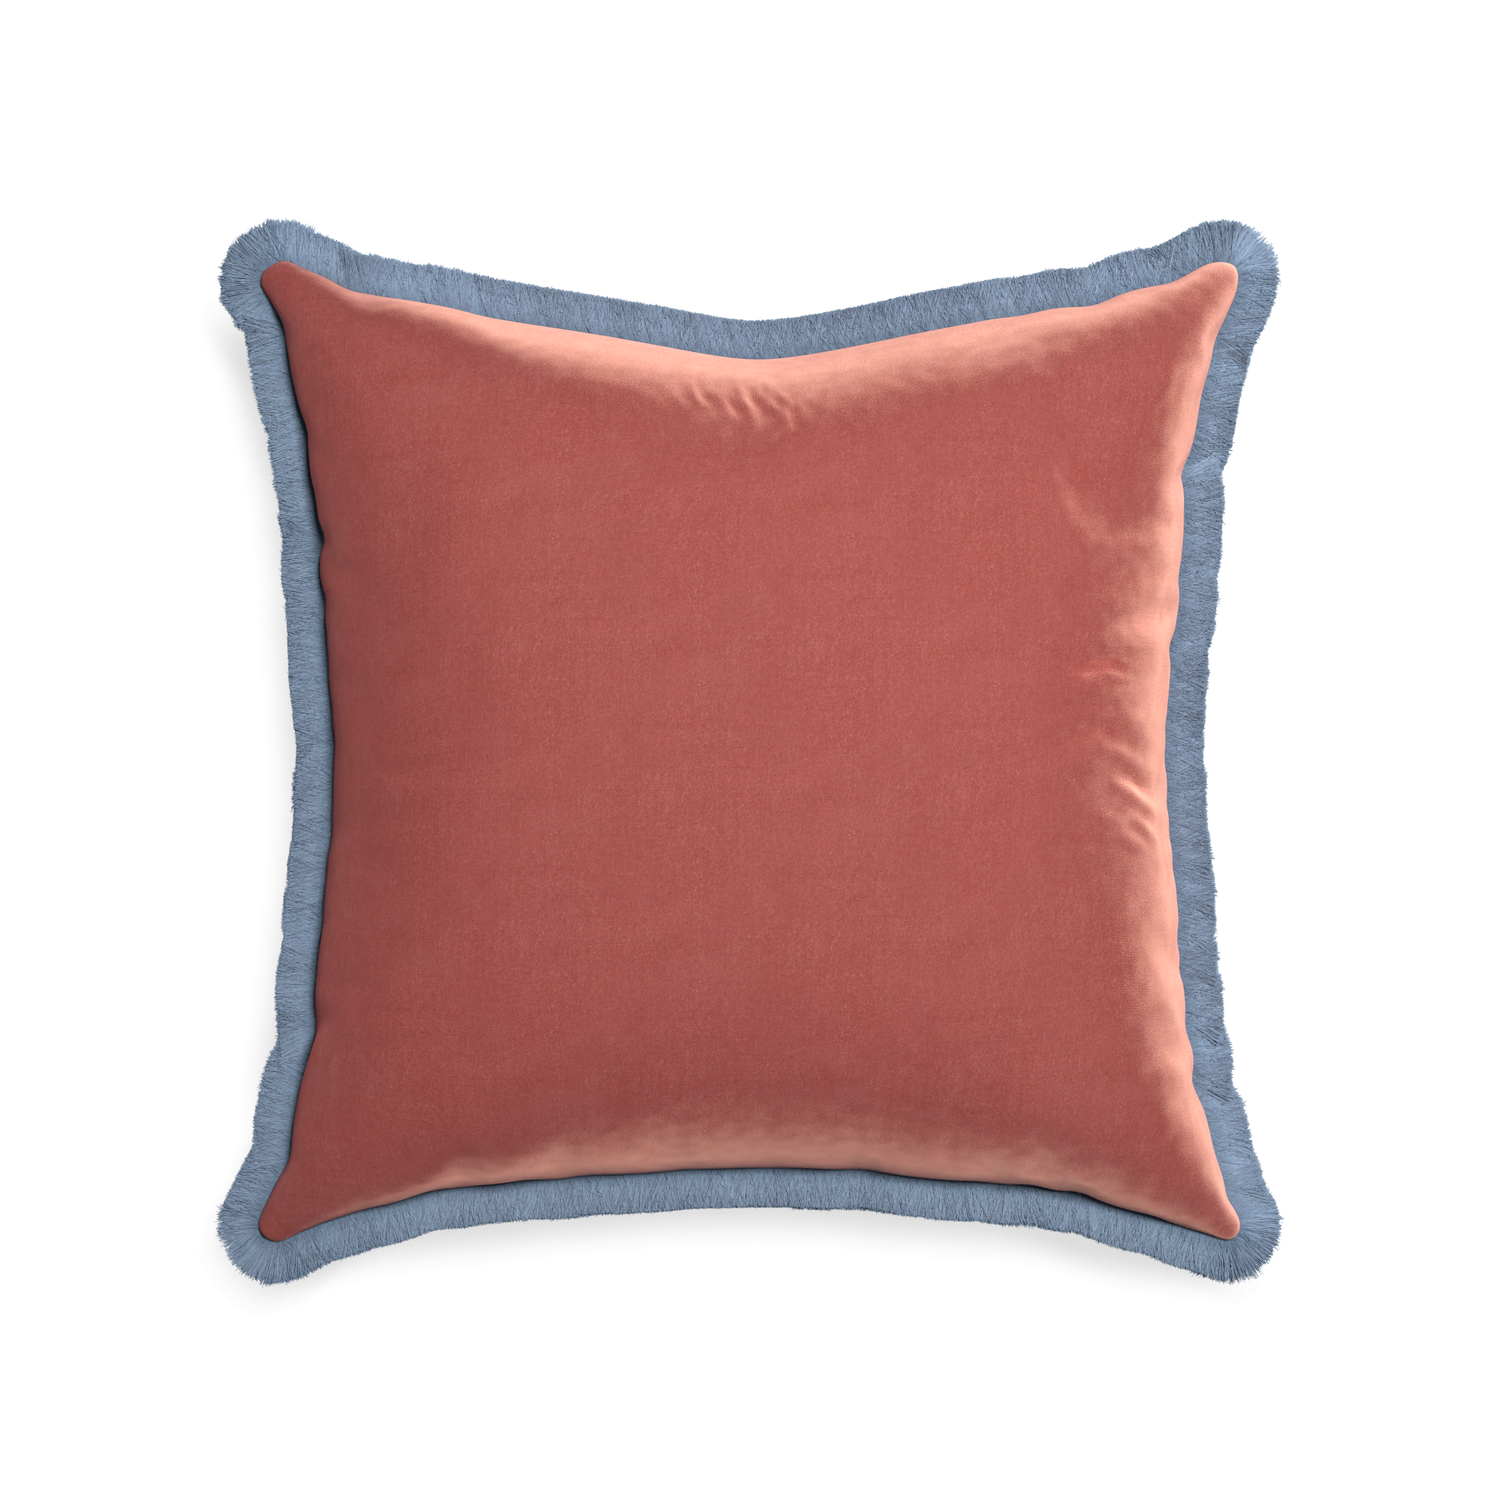 22-square cosmo velvet custom pillow with sky fringe on white background